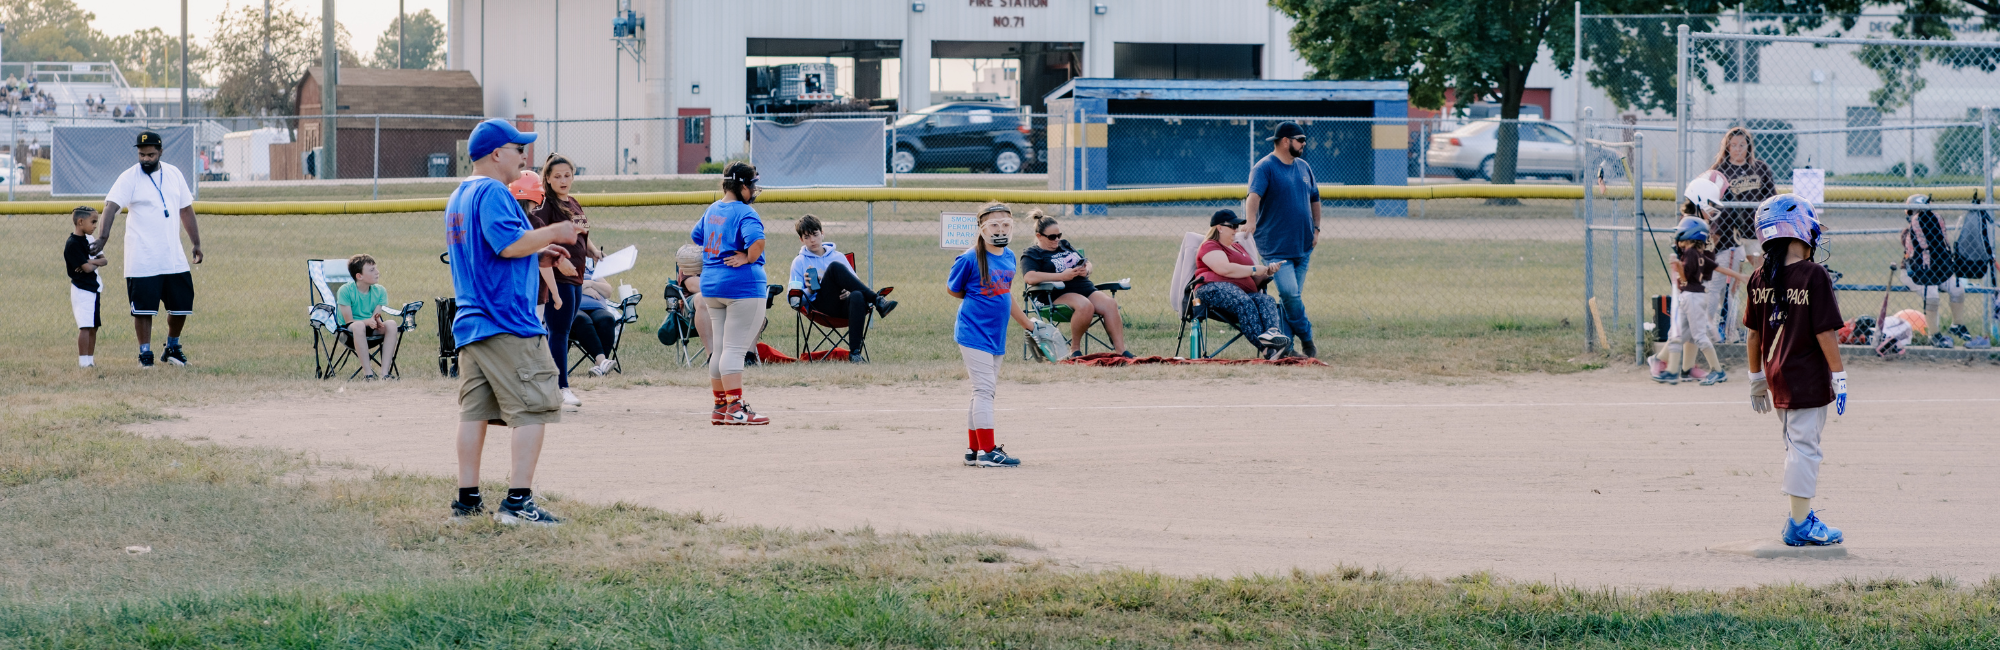 youth baseball game at park